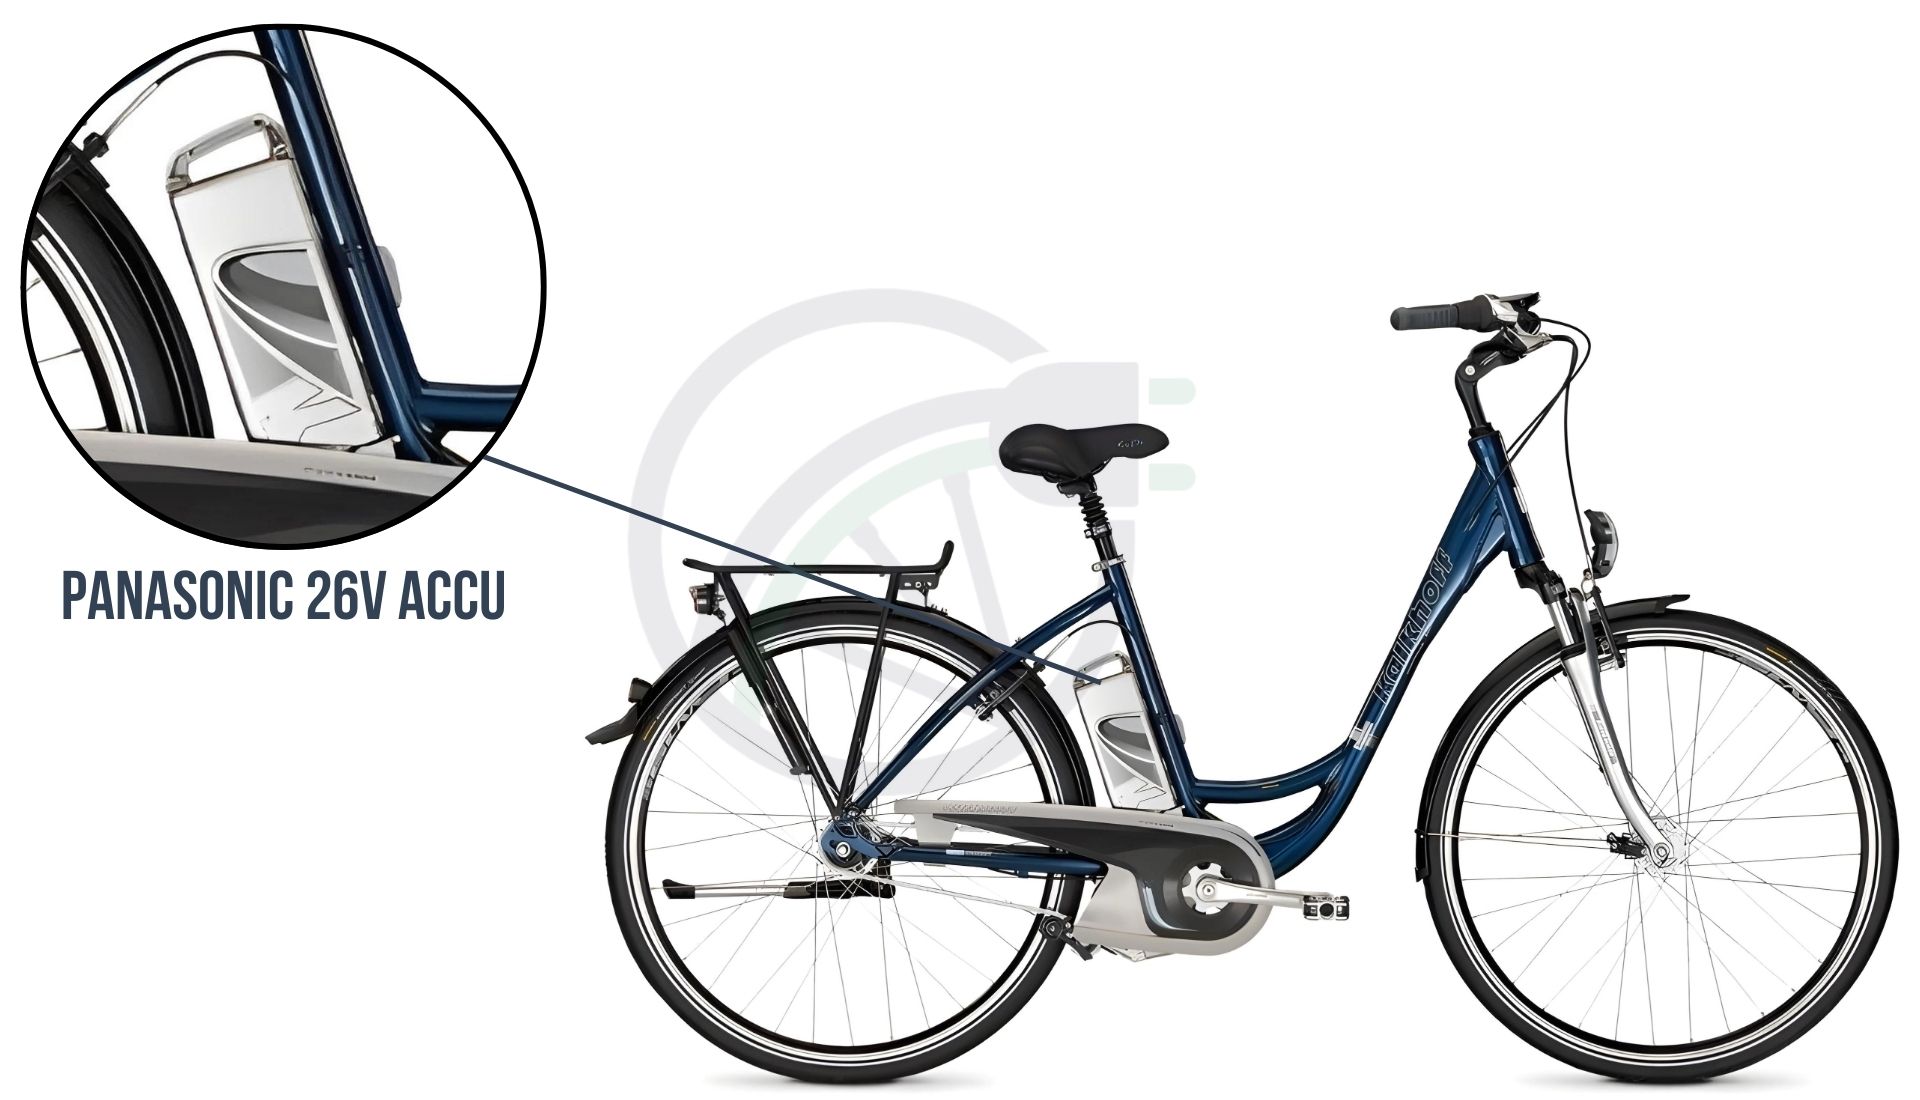 Een Flyer elektrische fiets met daarbij uitgelicht welke accu er verwerkt zit in deze fiets. In dit geval is dit de Panasonic 26V accu. 